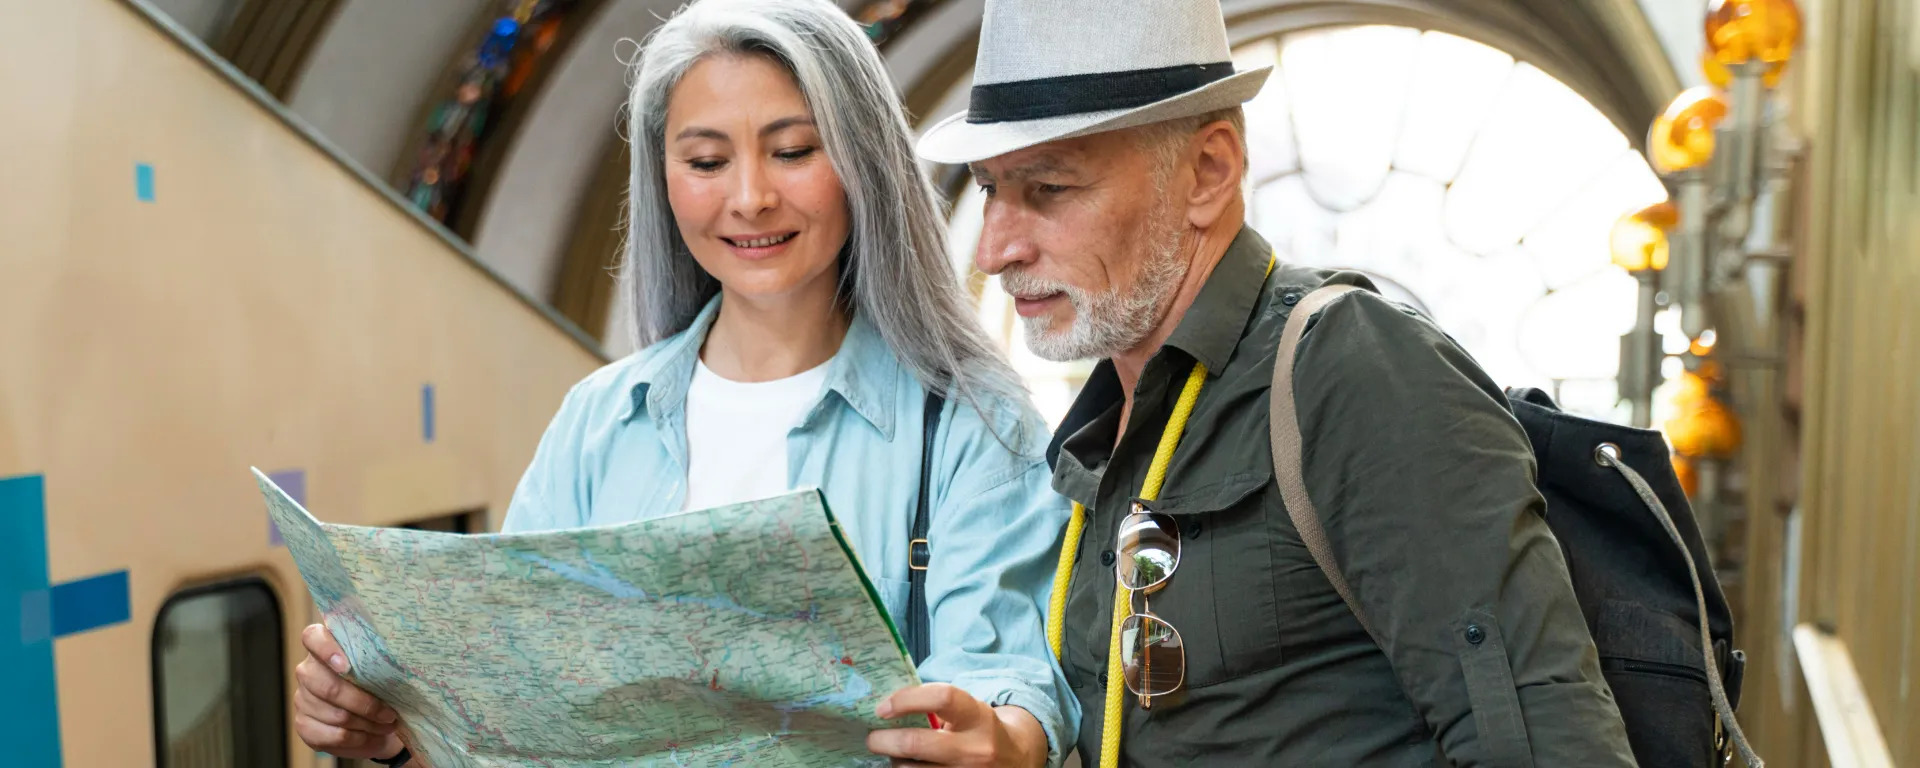 Casal de idosos olhando um mapa durante a viagem.